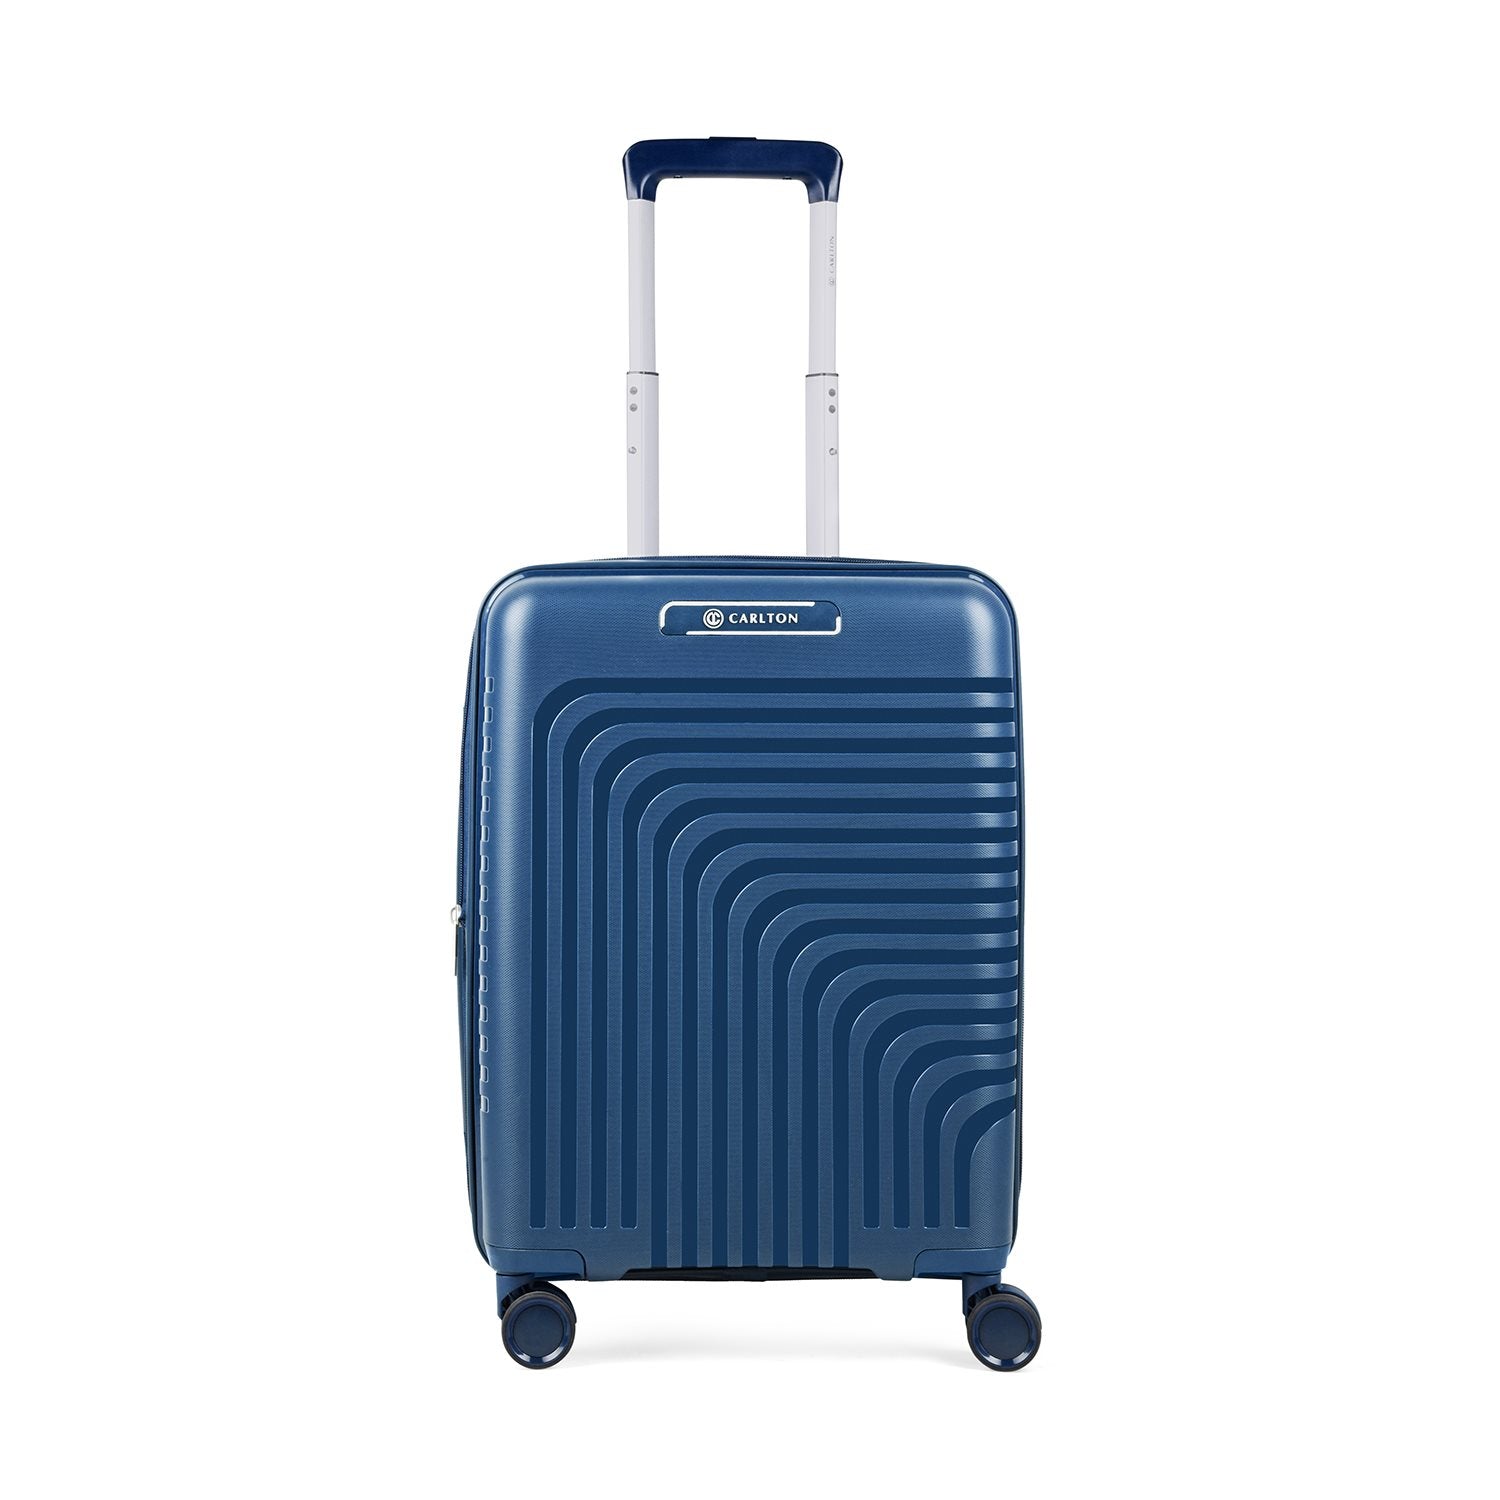 Carlton Wego Plus - Handbagage Koffer - 55 cm - Blue Handbagage Koffer - Reisartikelen-nl